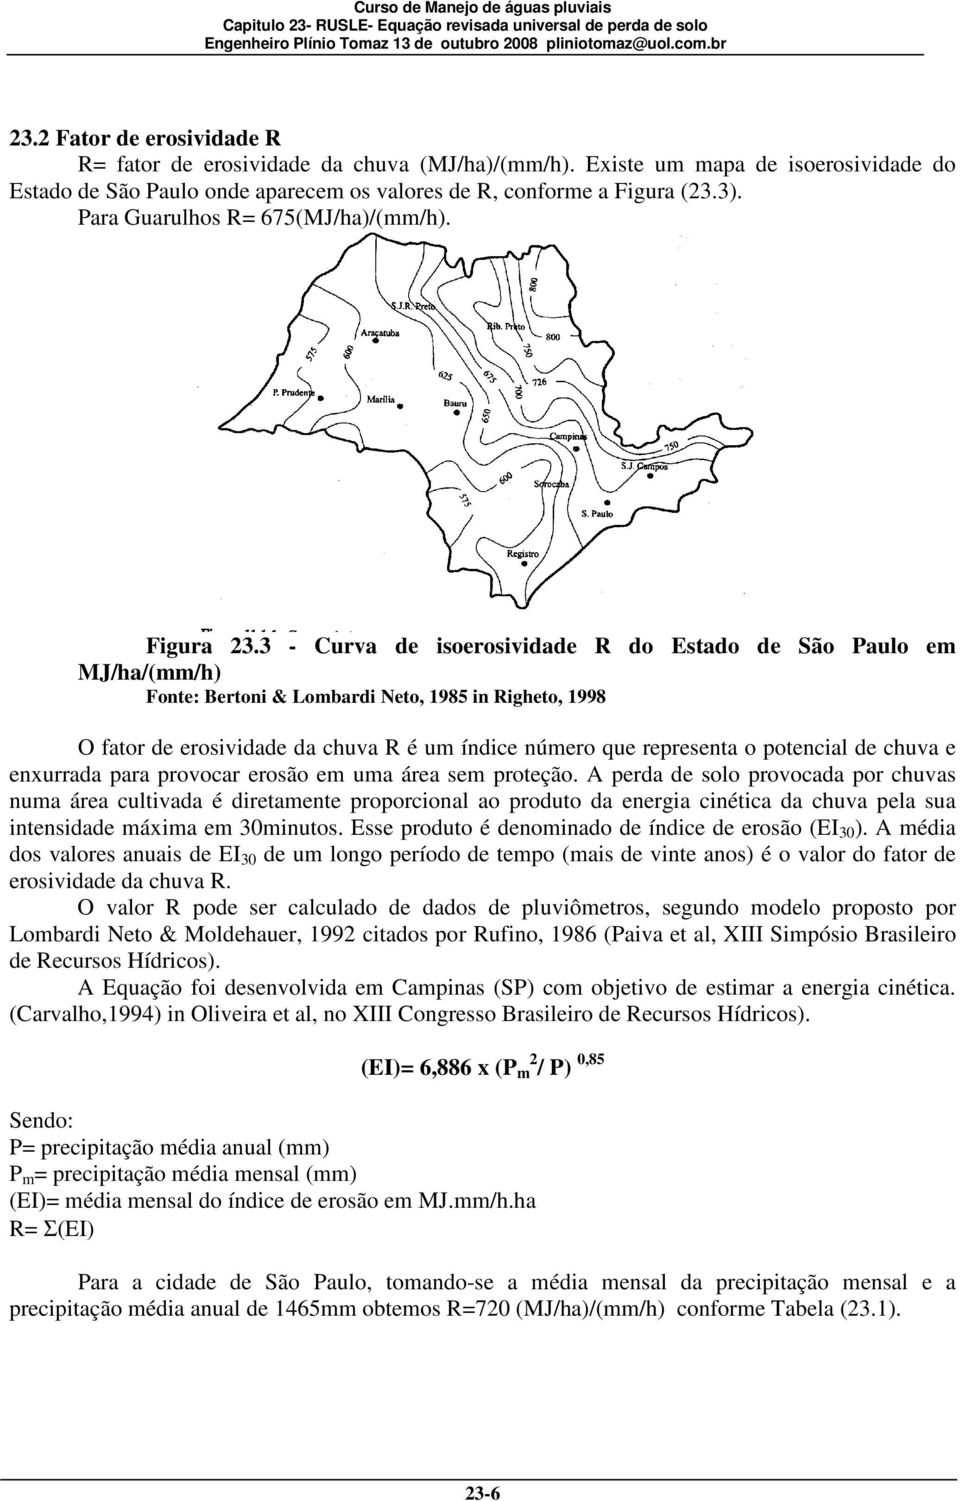 3 - Curva de isoerosividade R do Estado de São Paulo em MJ/ha/(mm/h) Fonte: Bertoni & Lombardi Neto, 1985 in Righeto, 1998 O fator de erosividade da chuva R é um índice número que representa o